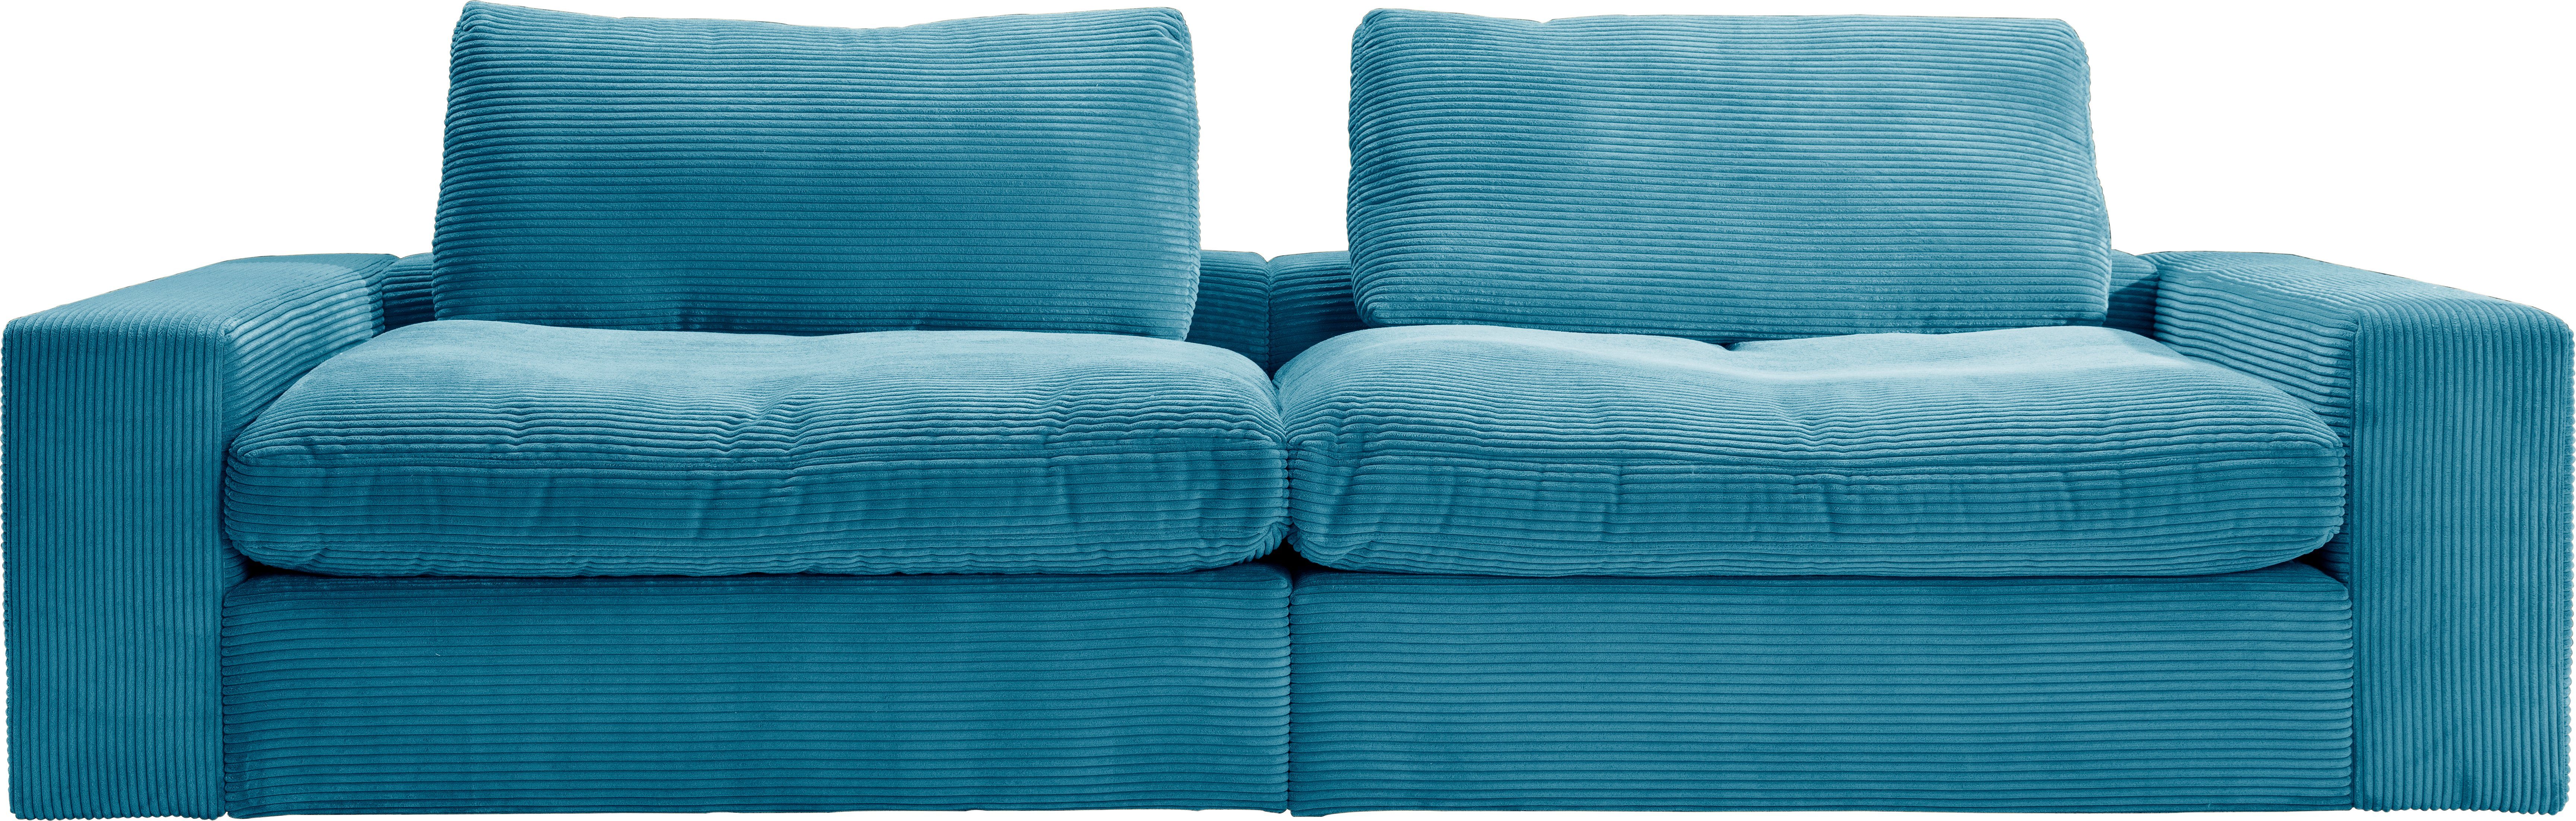 Big-Sofa Cord, mit Sitz und in Sandy, Rückenkissen losen alina